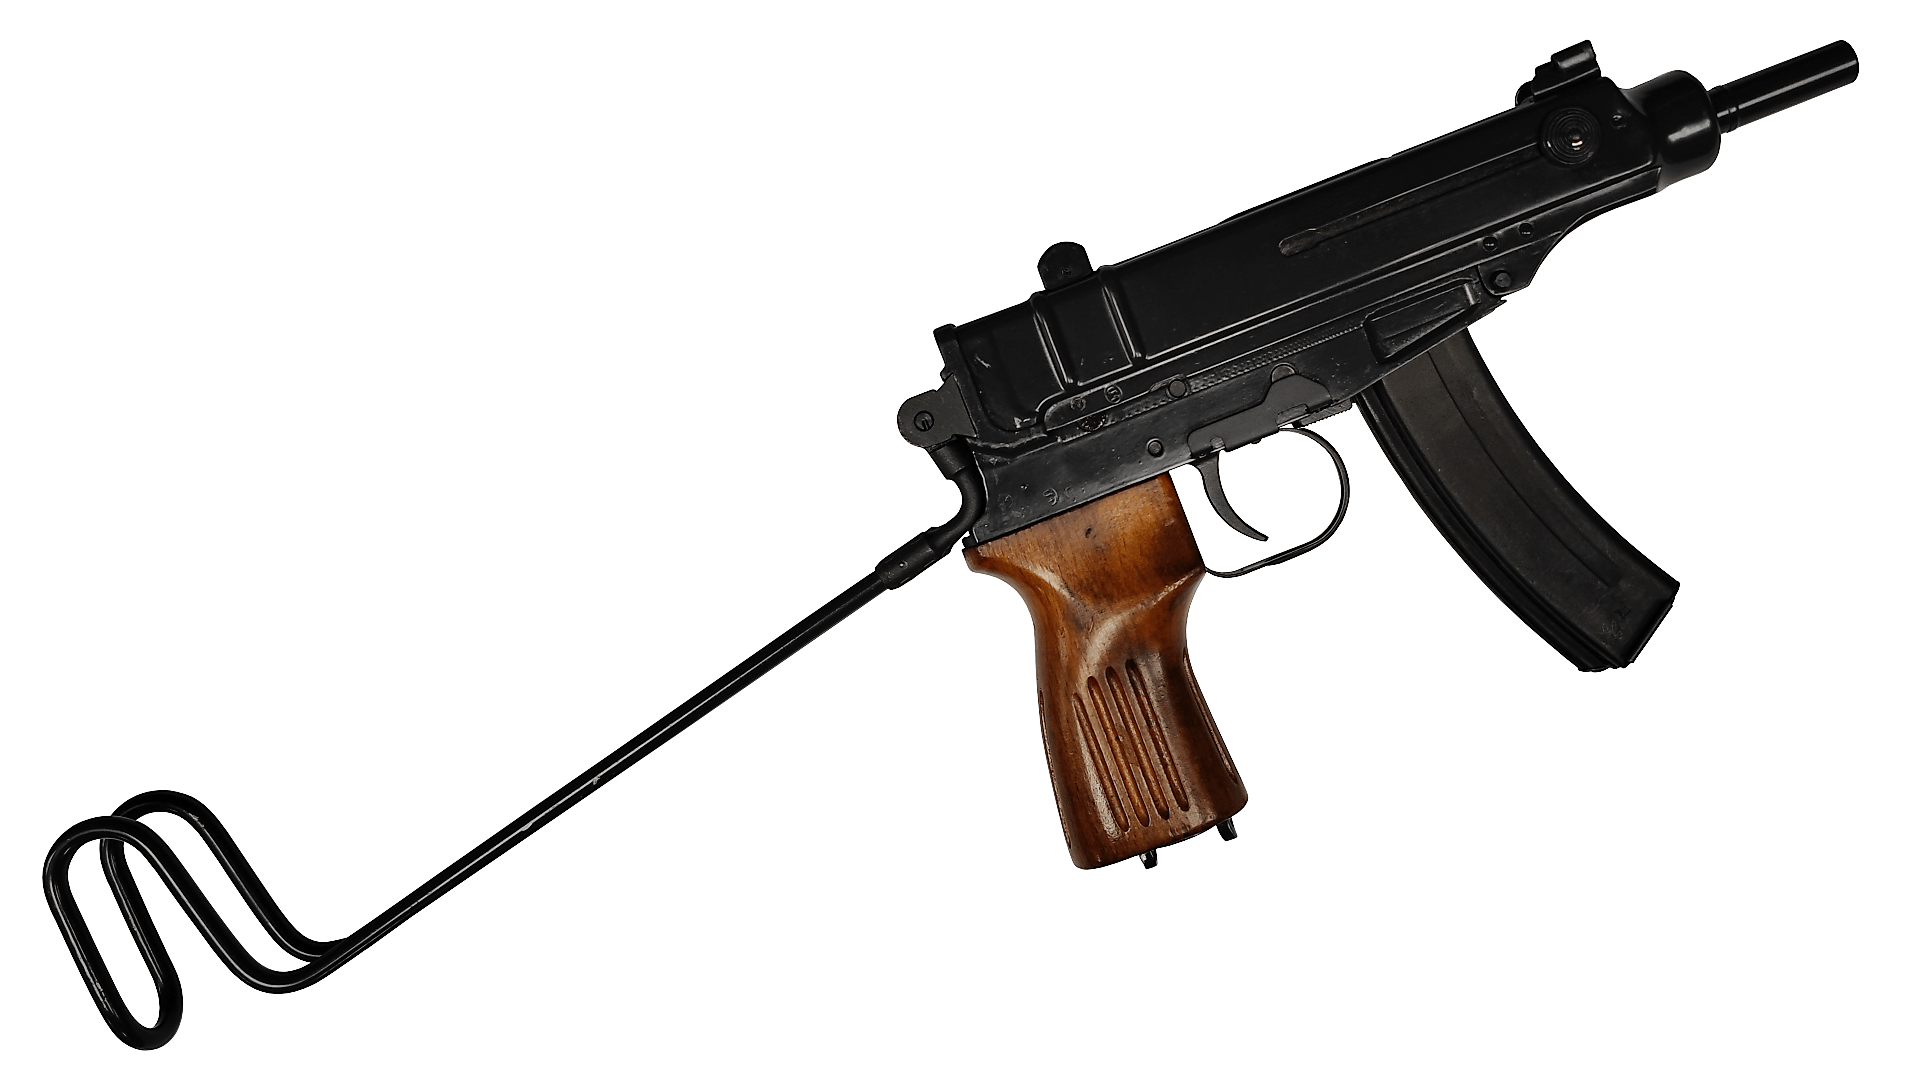 Pistolet maszynowy CZ Scorpion wz. 61 kal. 7,65x17 mm